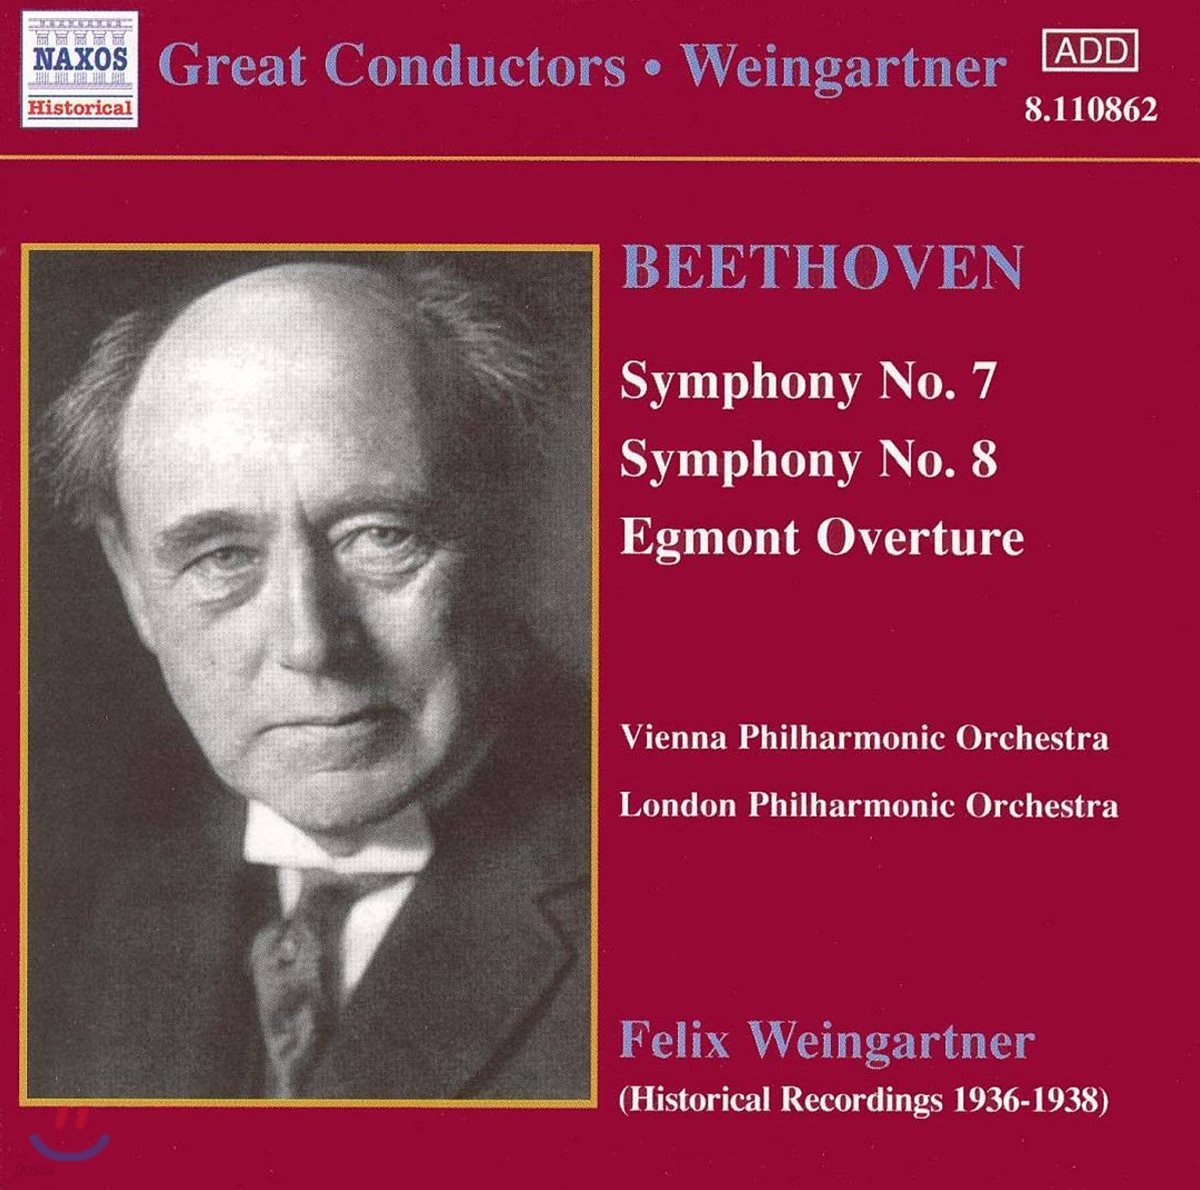 Felix Weingartner 베토벤 : 교향곡 7,9번, 에그몬트 서곡 - 바인가르트너